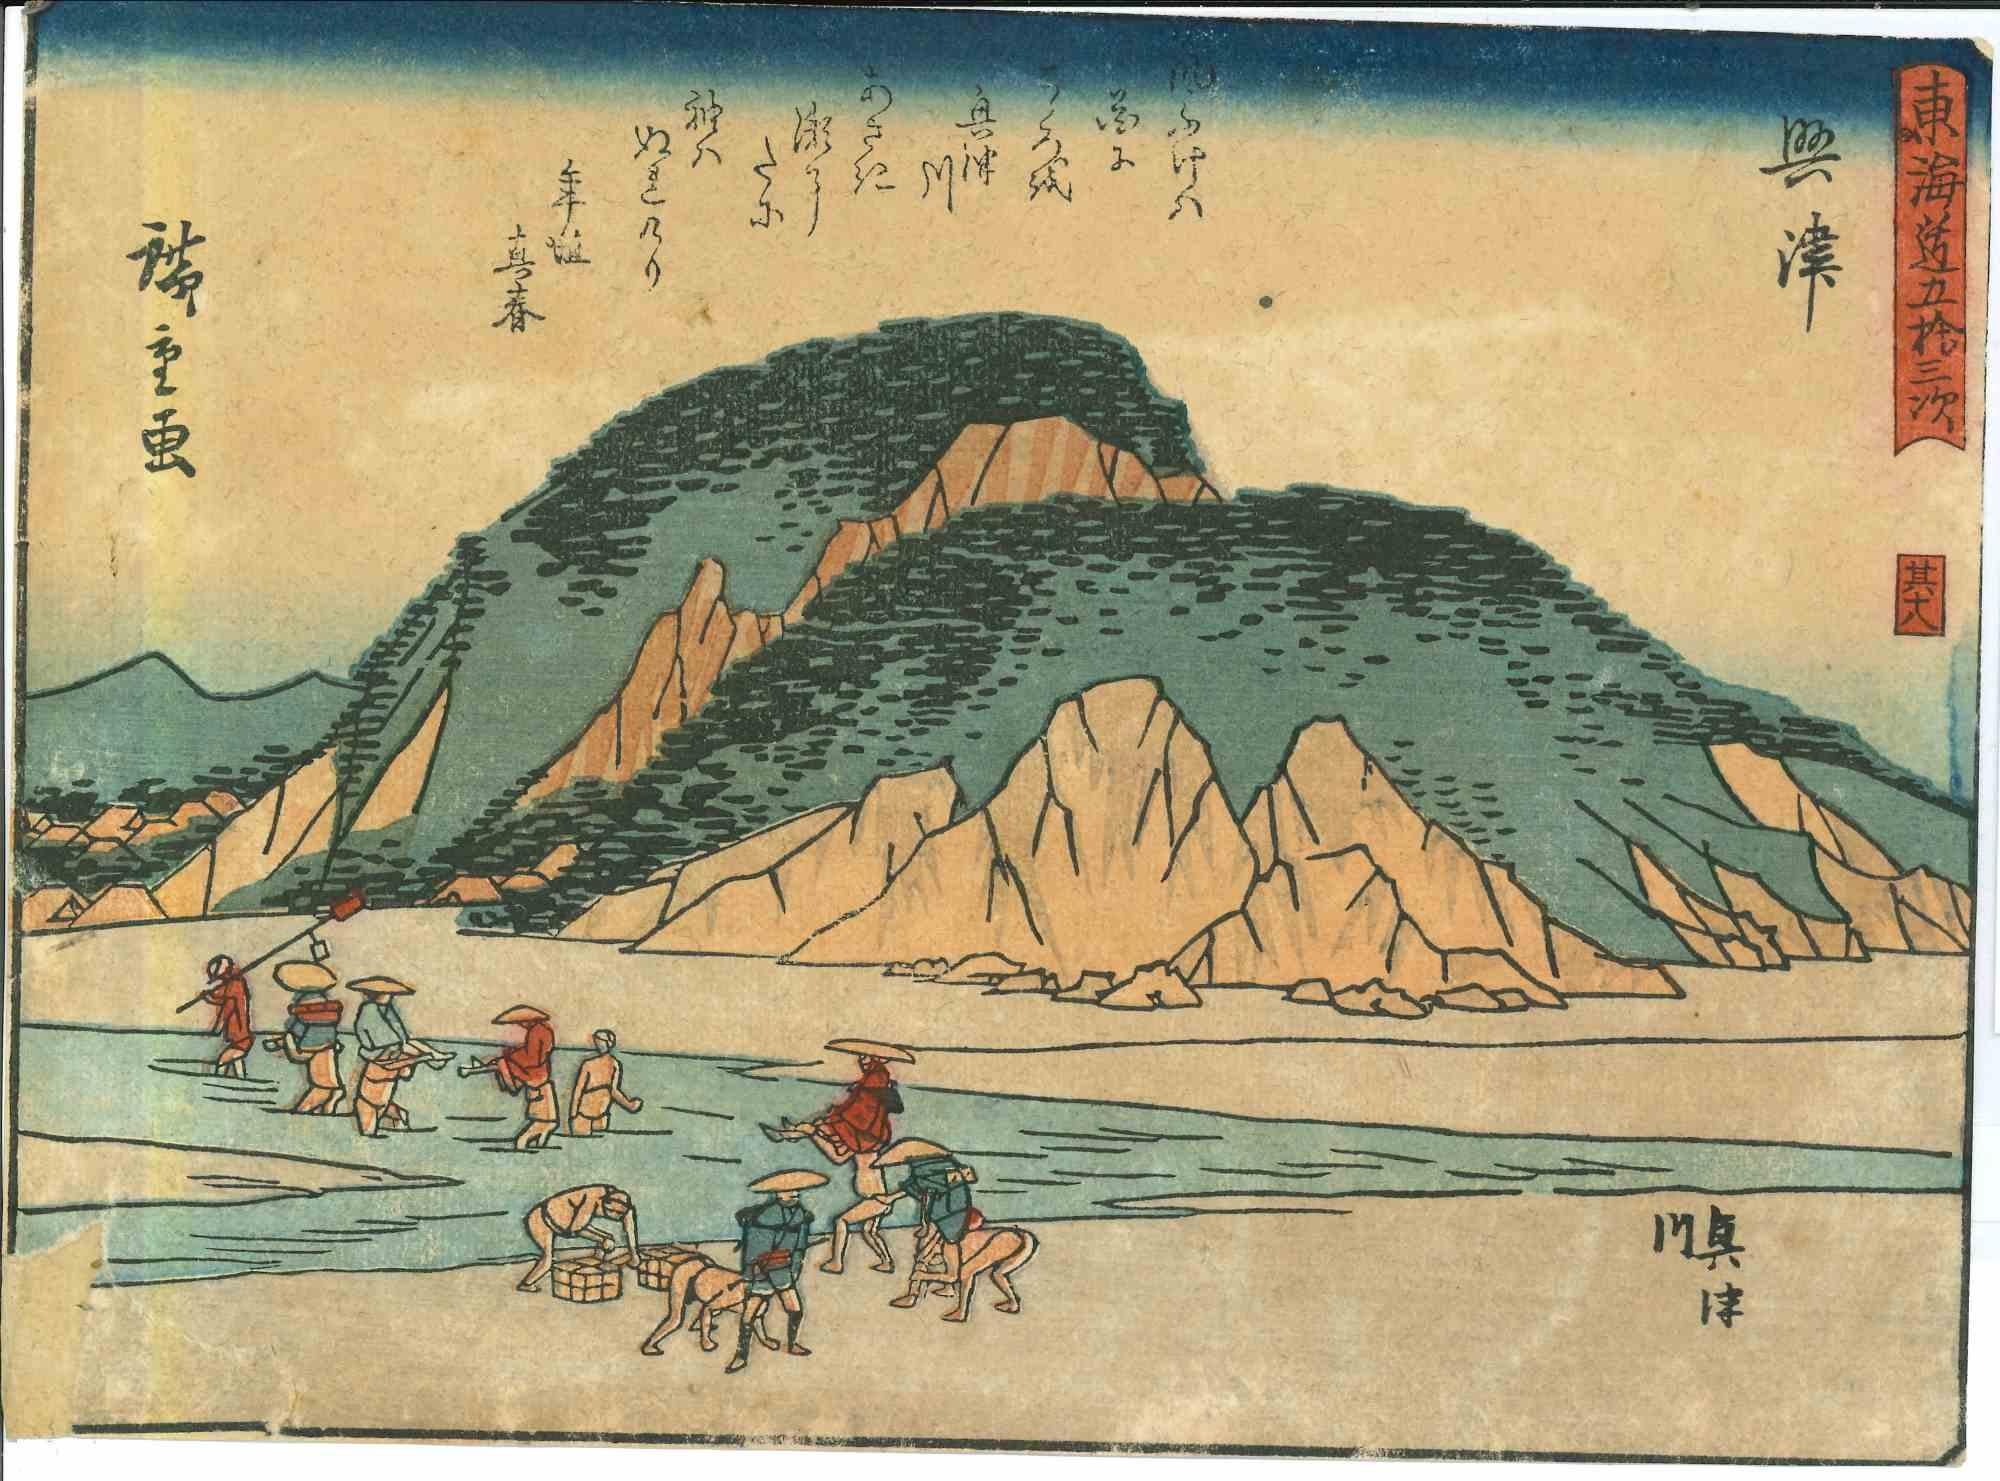 Okitsu - 53 Stations of the Tokaido - Woodcut by Utagawa Hiroshige - 1833/34